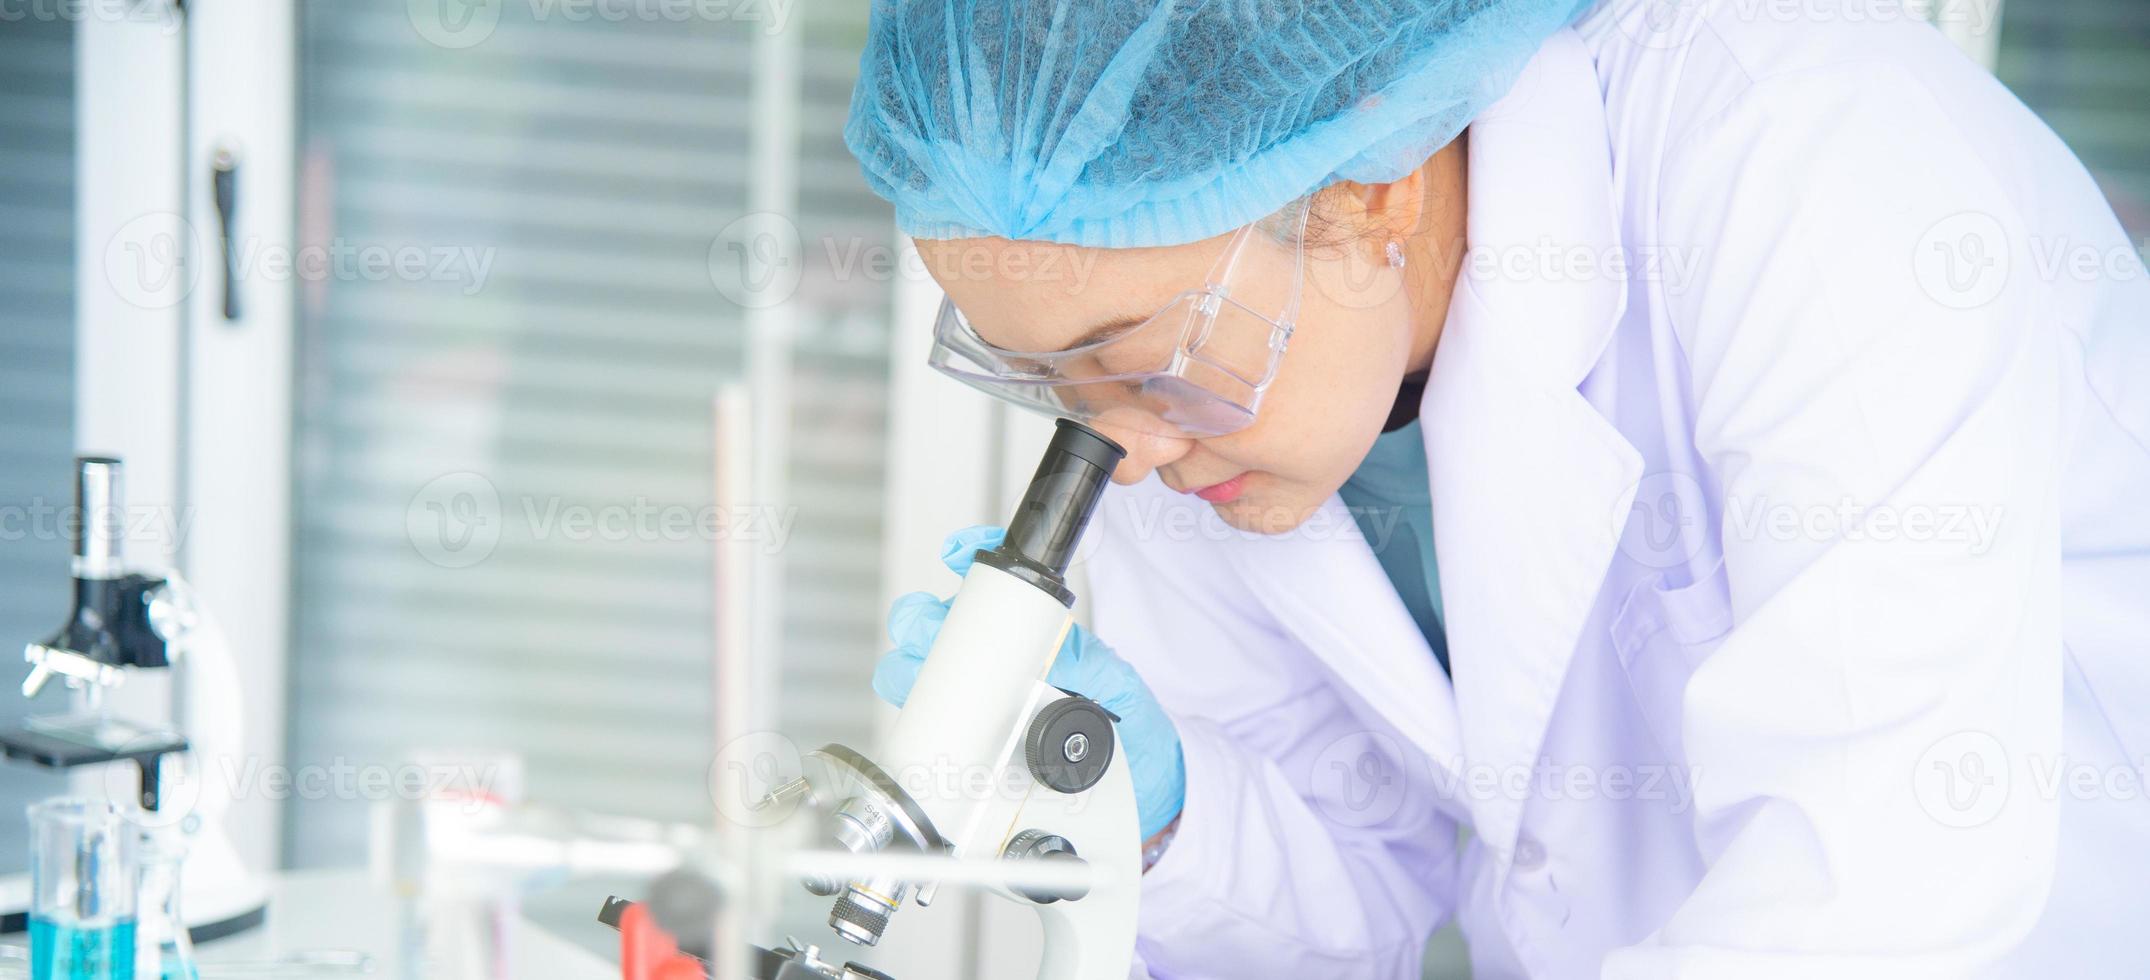 mulher asiática cientista, pesquisadora, técnica ou estudante realizou pesquisas ou experimentos usando microscópio que é equipamento científico em laboratório médico, de química ou biologia foto